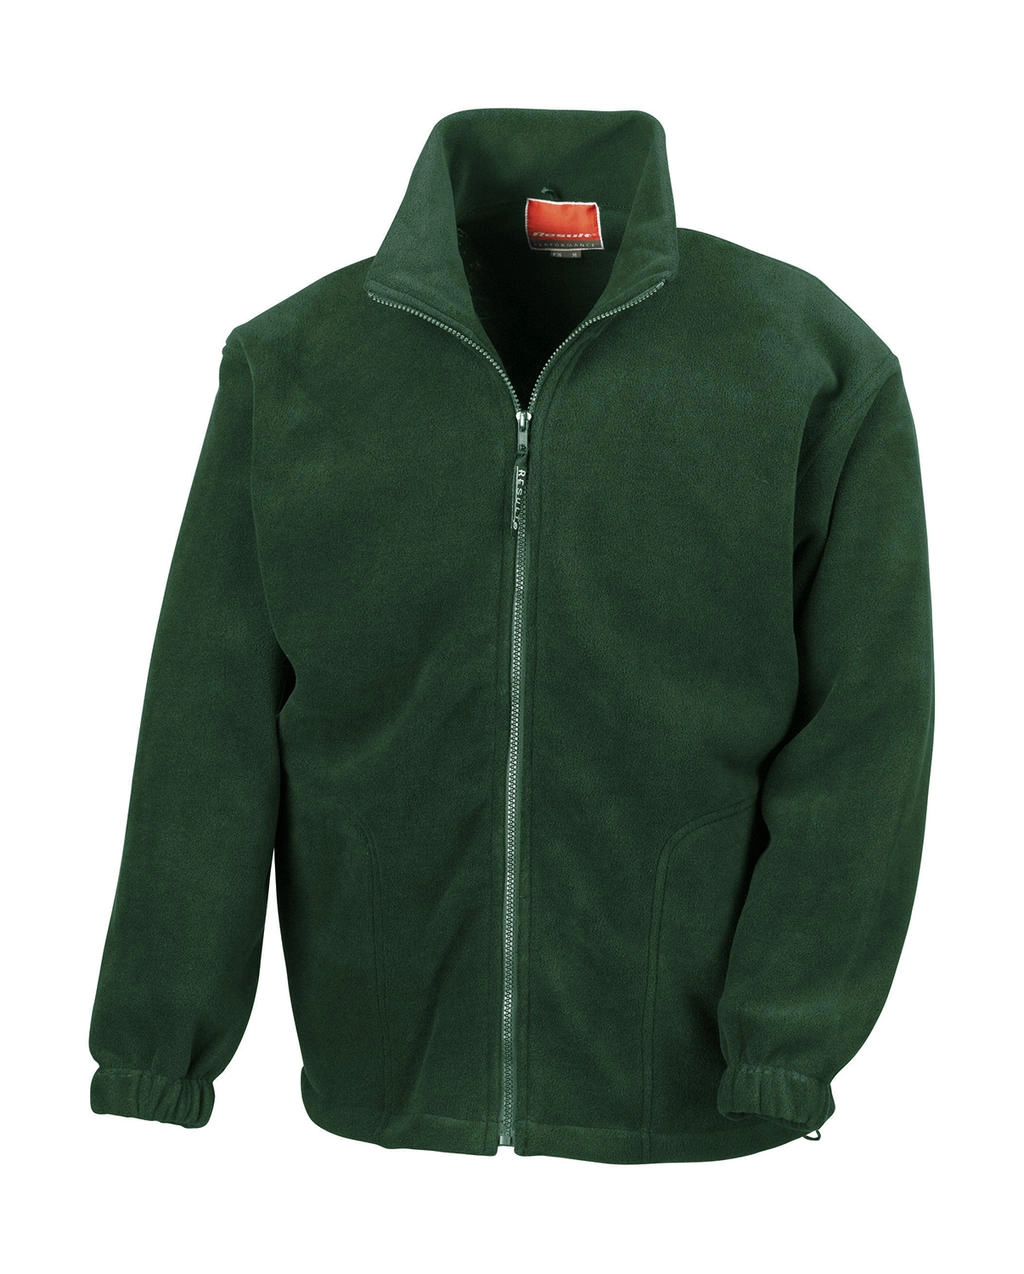 Polartherm™ Jacket zum Besticken und Bedrucken in der Farbe Forest Green mit Ihren Logo, Schriftzug oder Motiv.